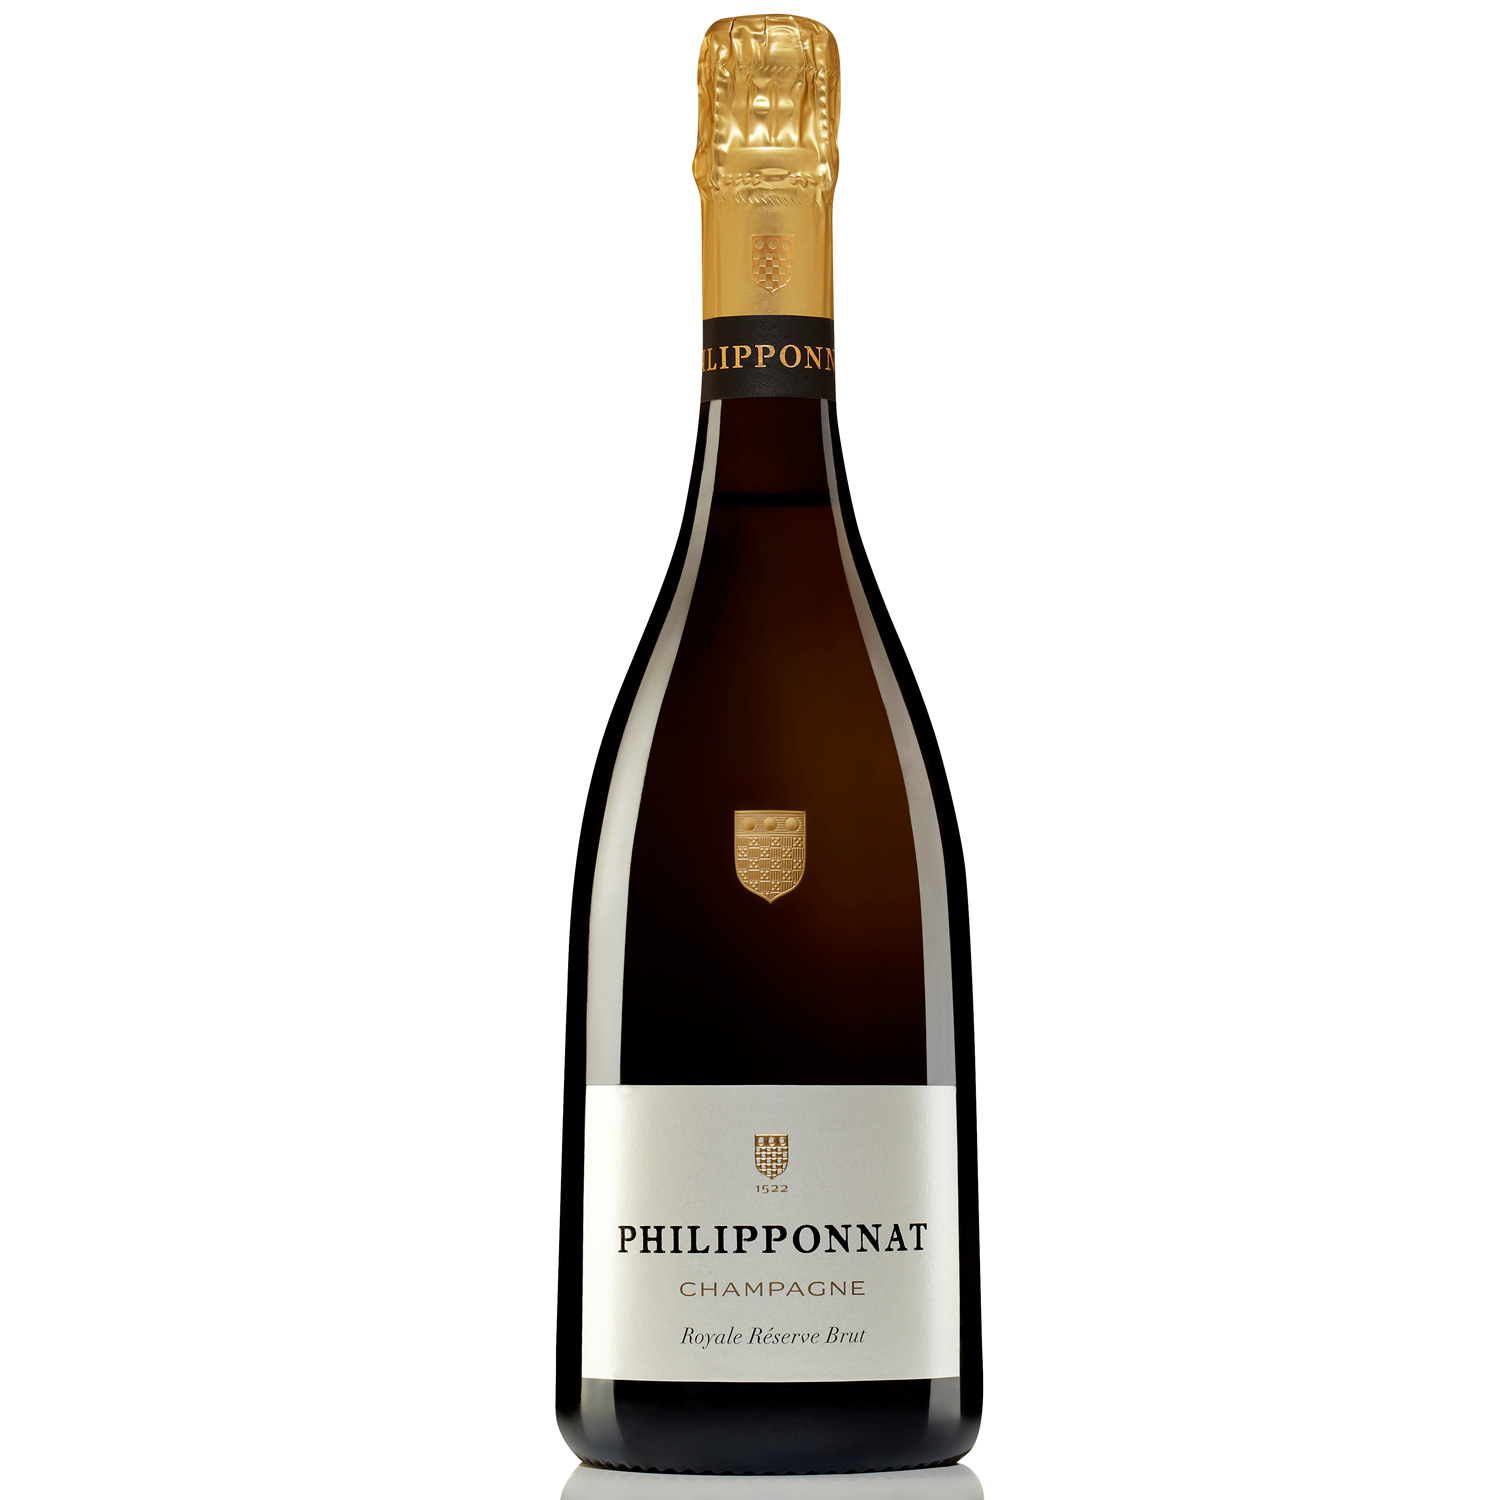 Champagne Philipponnat: Royale Réserve Brut